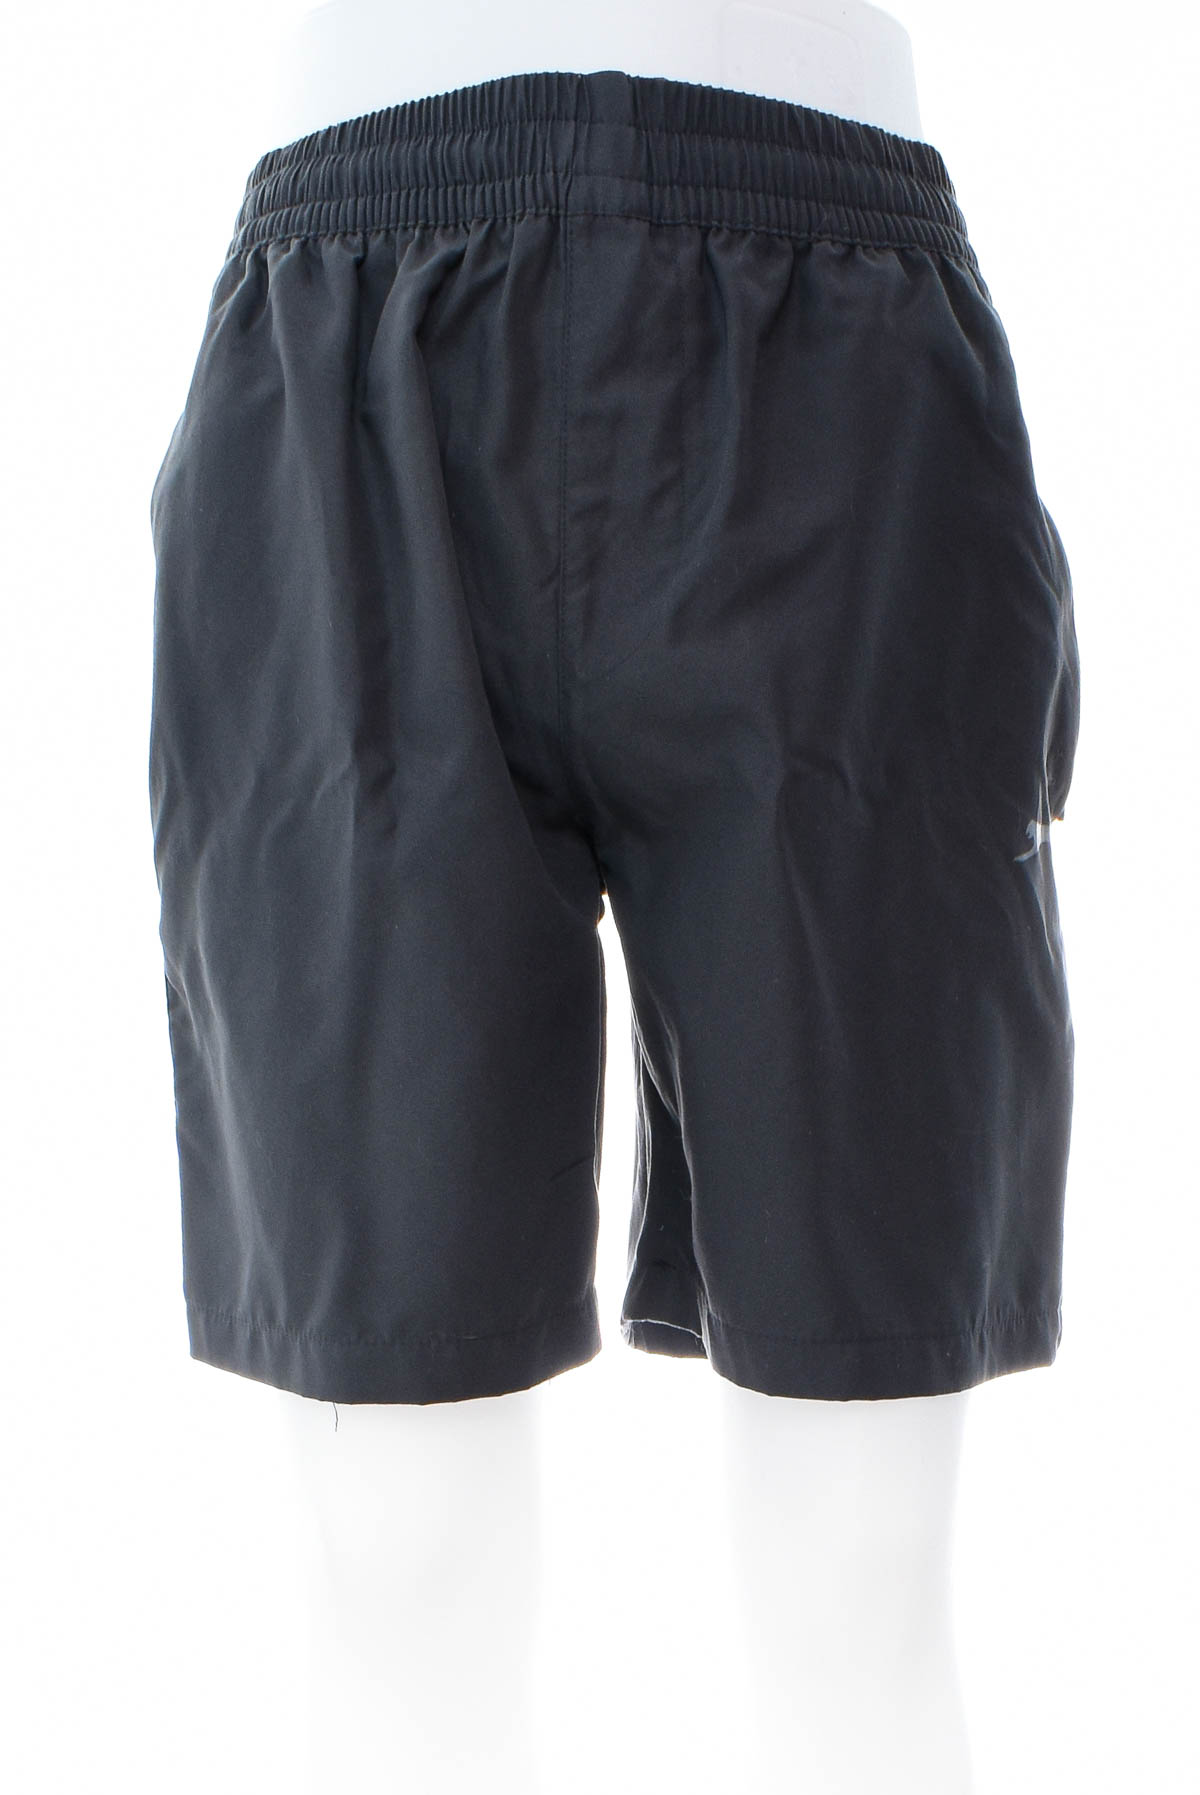 Men's shorts - Slazenger - 0